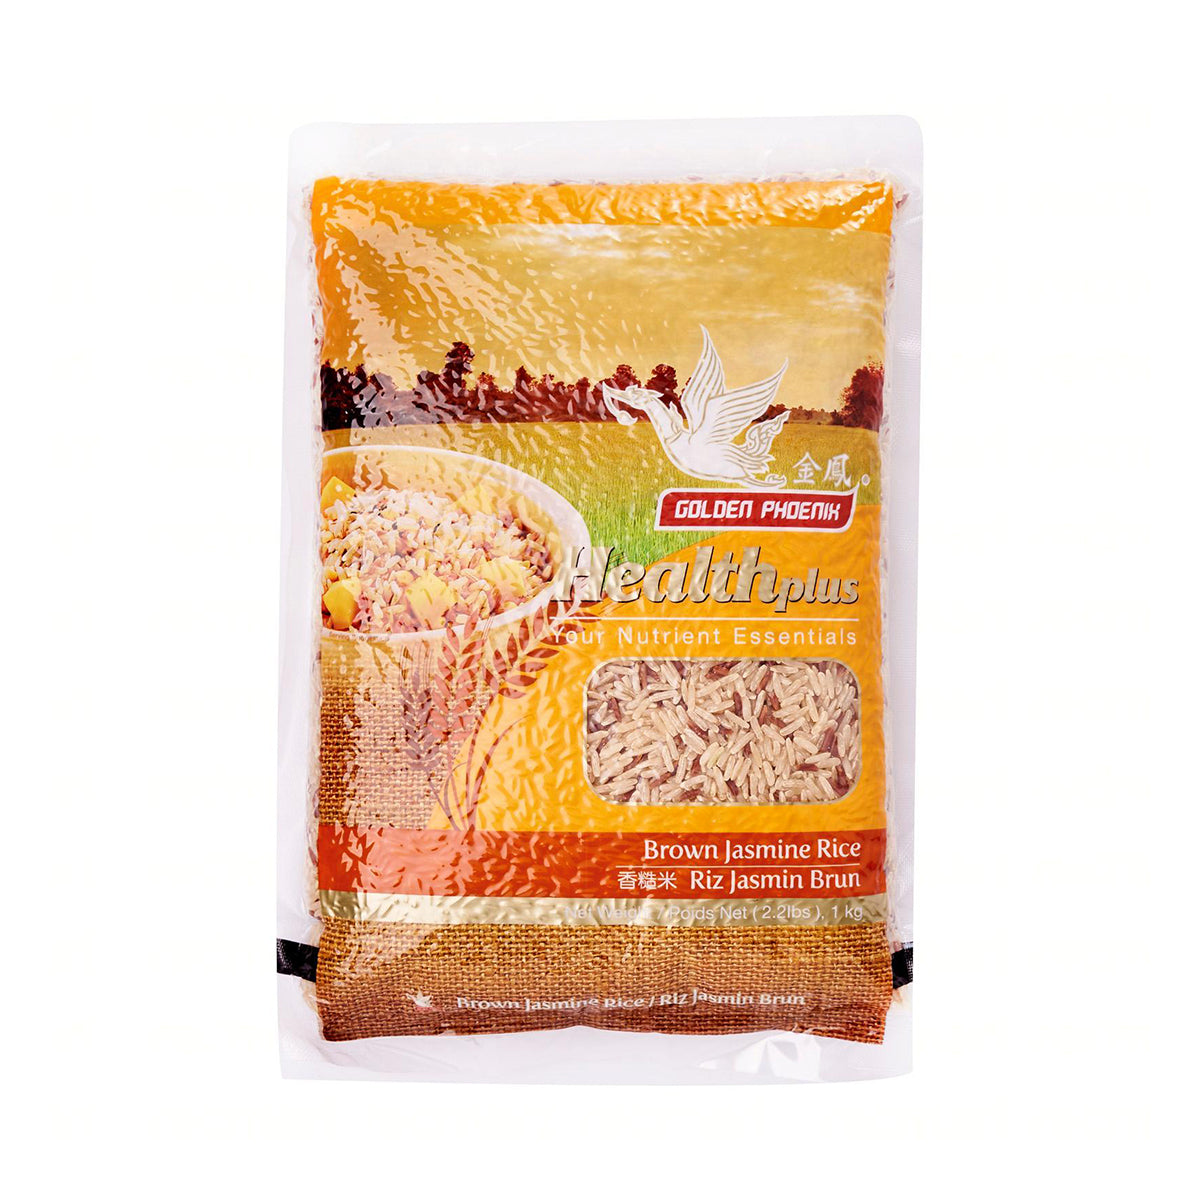 golden phoenix brown jasmine rice - 2.2lb